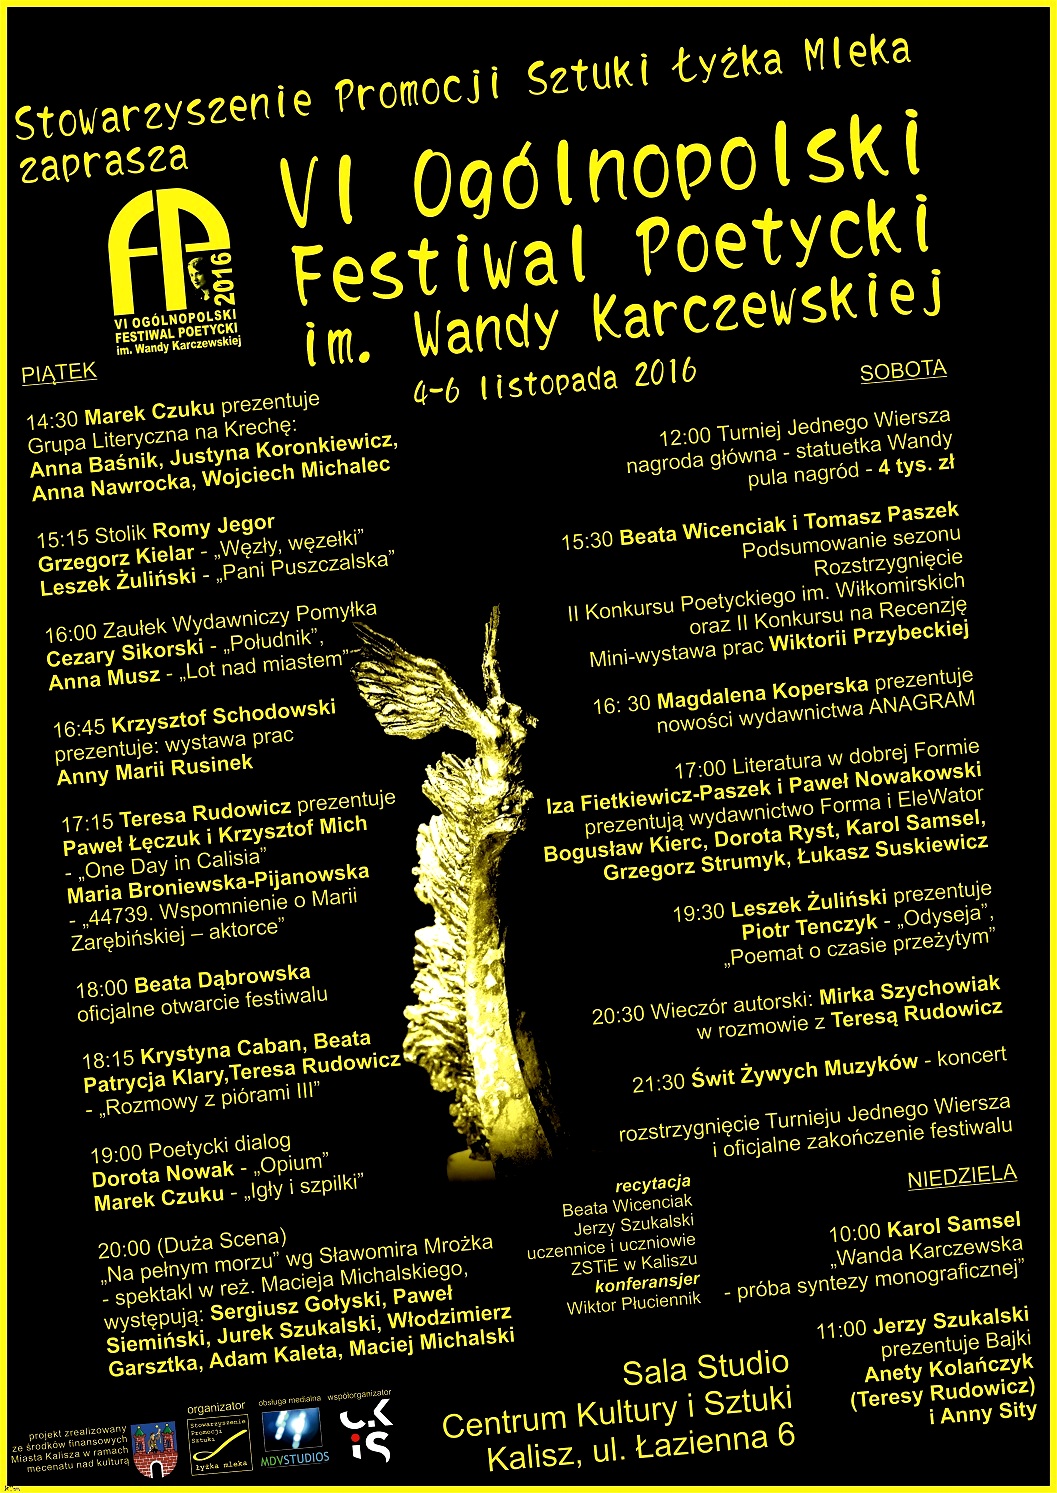 festiwal poezji 2016 - Stowarzyszenie Łyżka Mleka